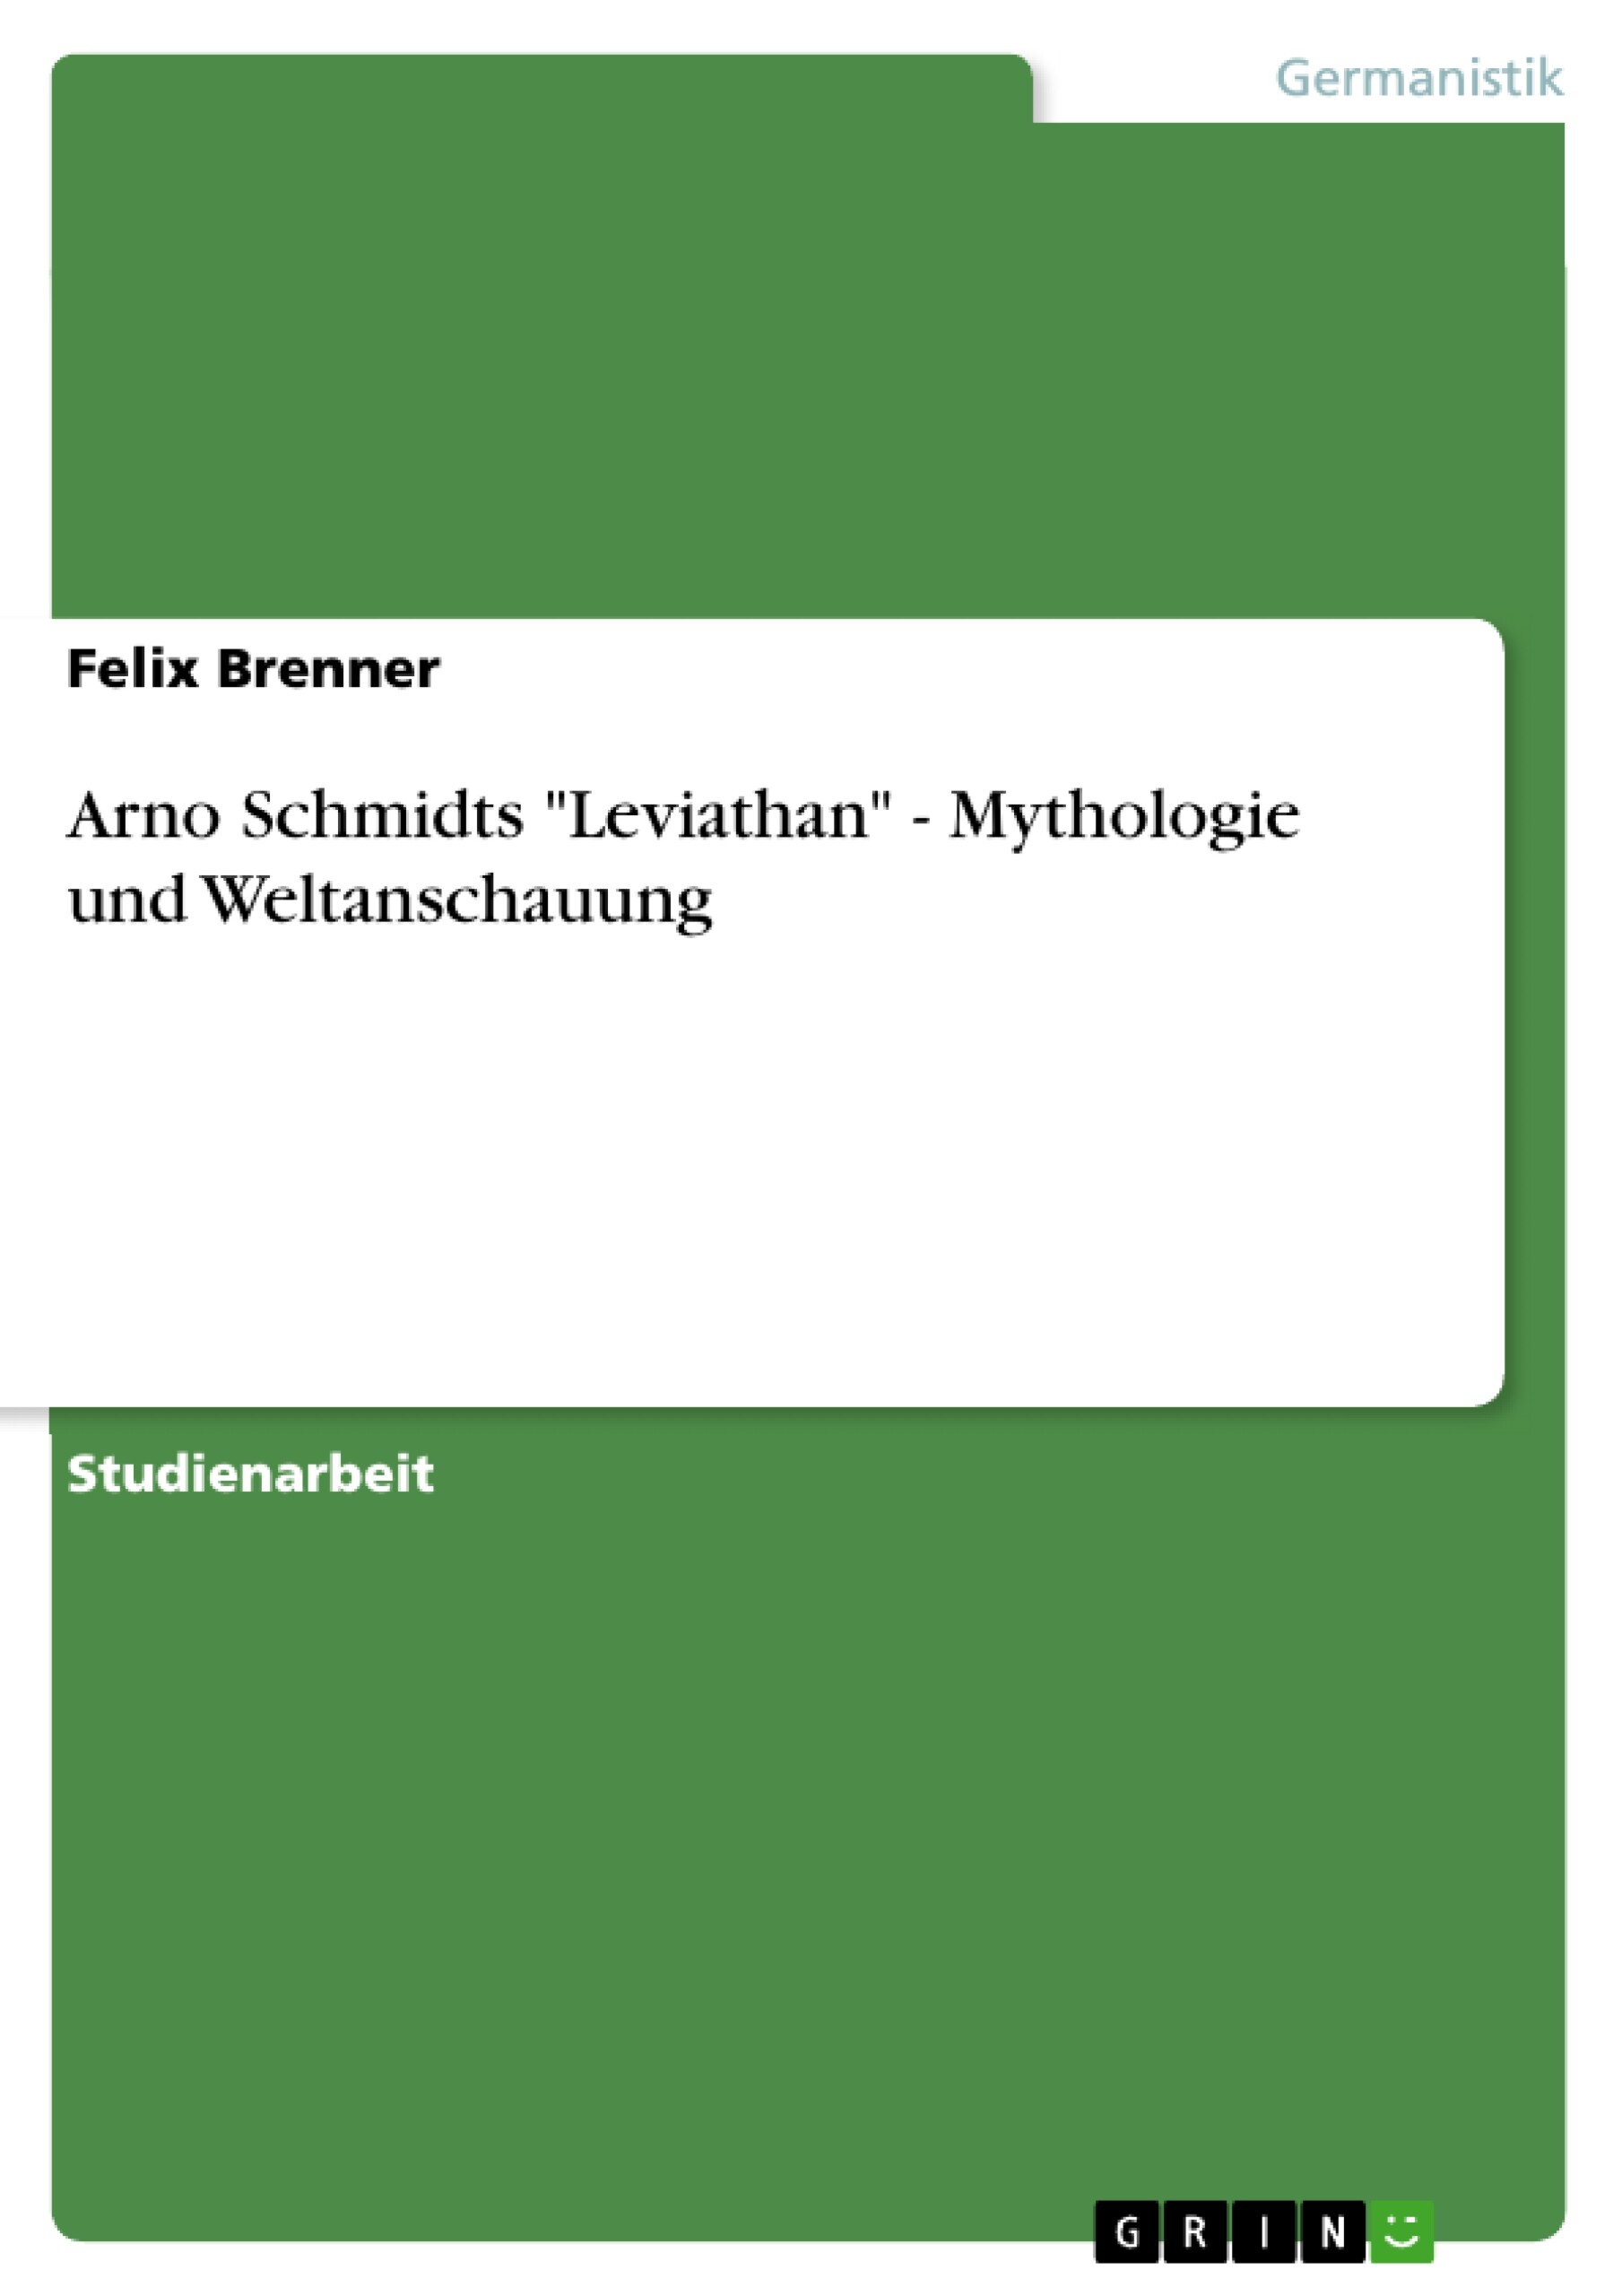 Arno Schmidts 'Leviathan' - Mythologie und Weltanschauung